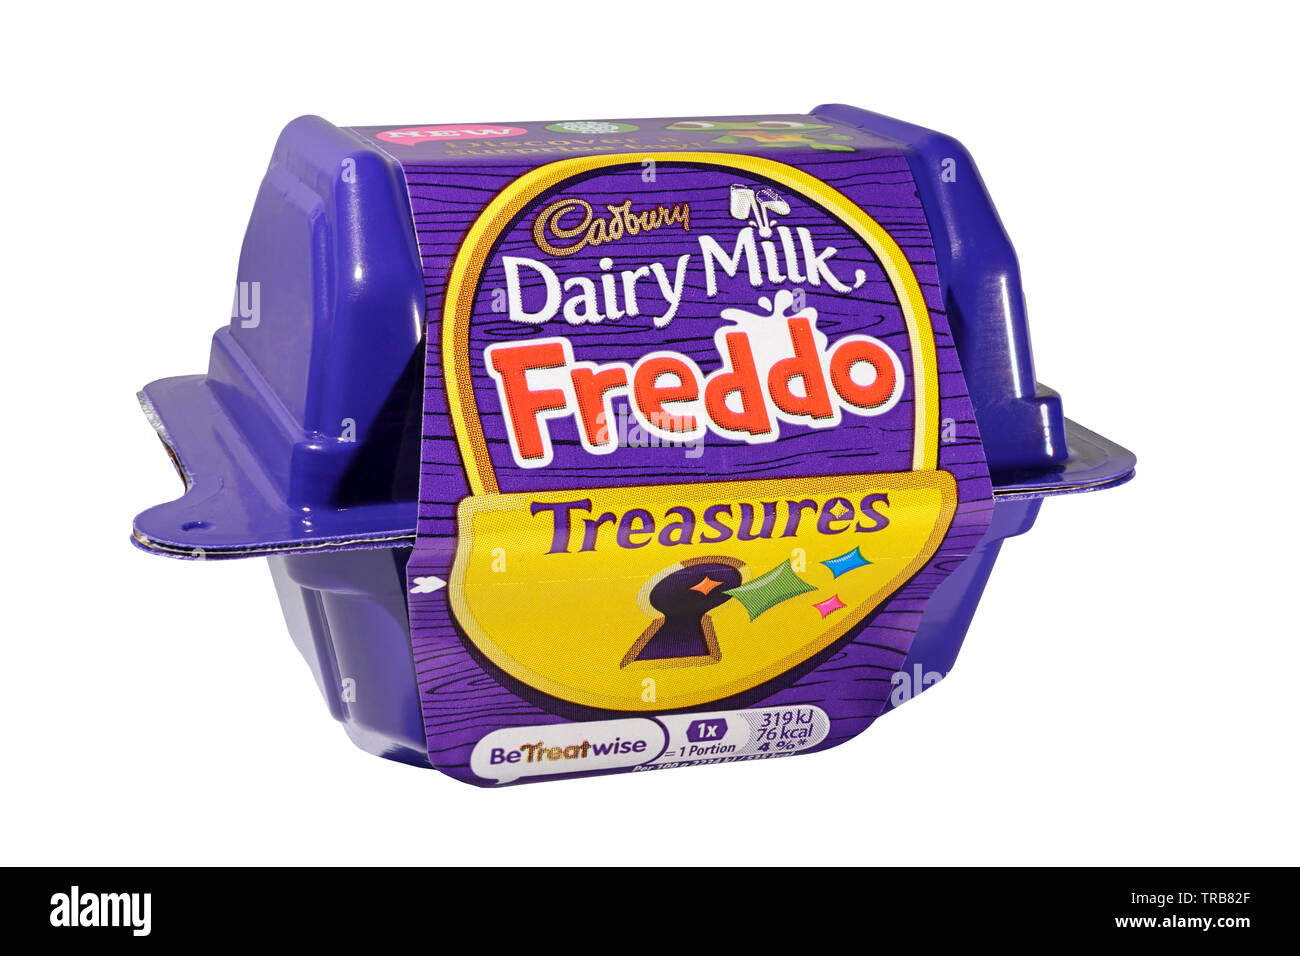 Cadbury Dairy Milk Freddo tesoros aislado sobre un fondo blanco. Foto de stock